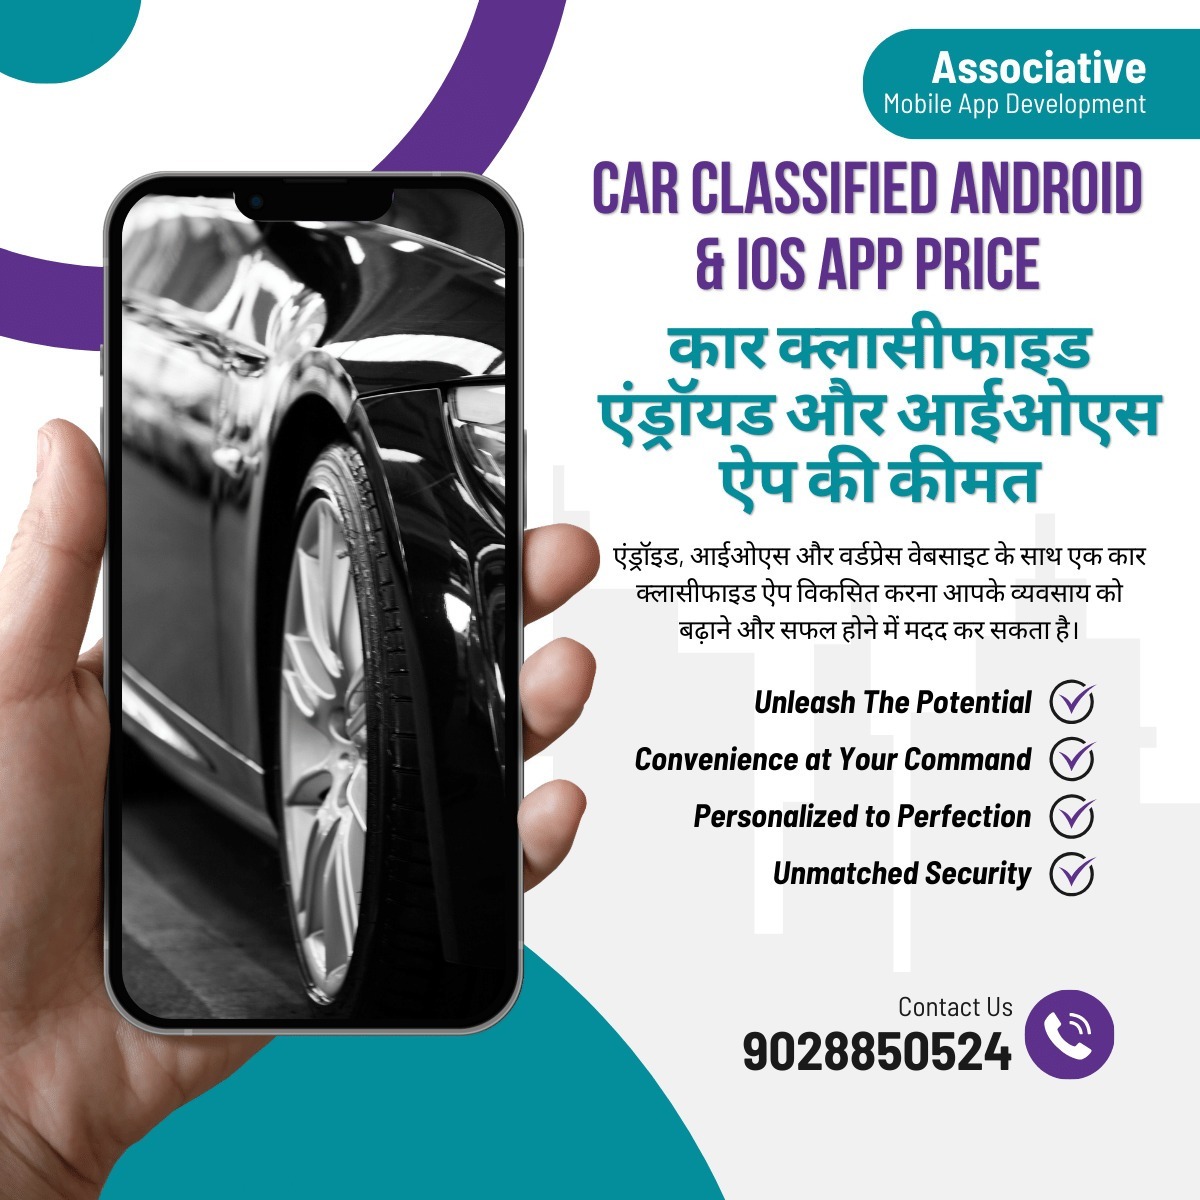 Car Classified Android & iOS App Price

कार क्लासीफाइड एंड्रॉयड और आईओएस ऐप की कीमत